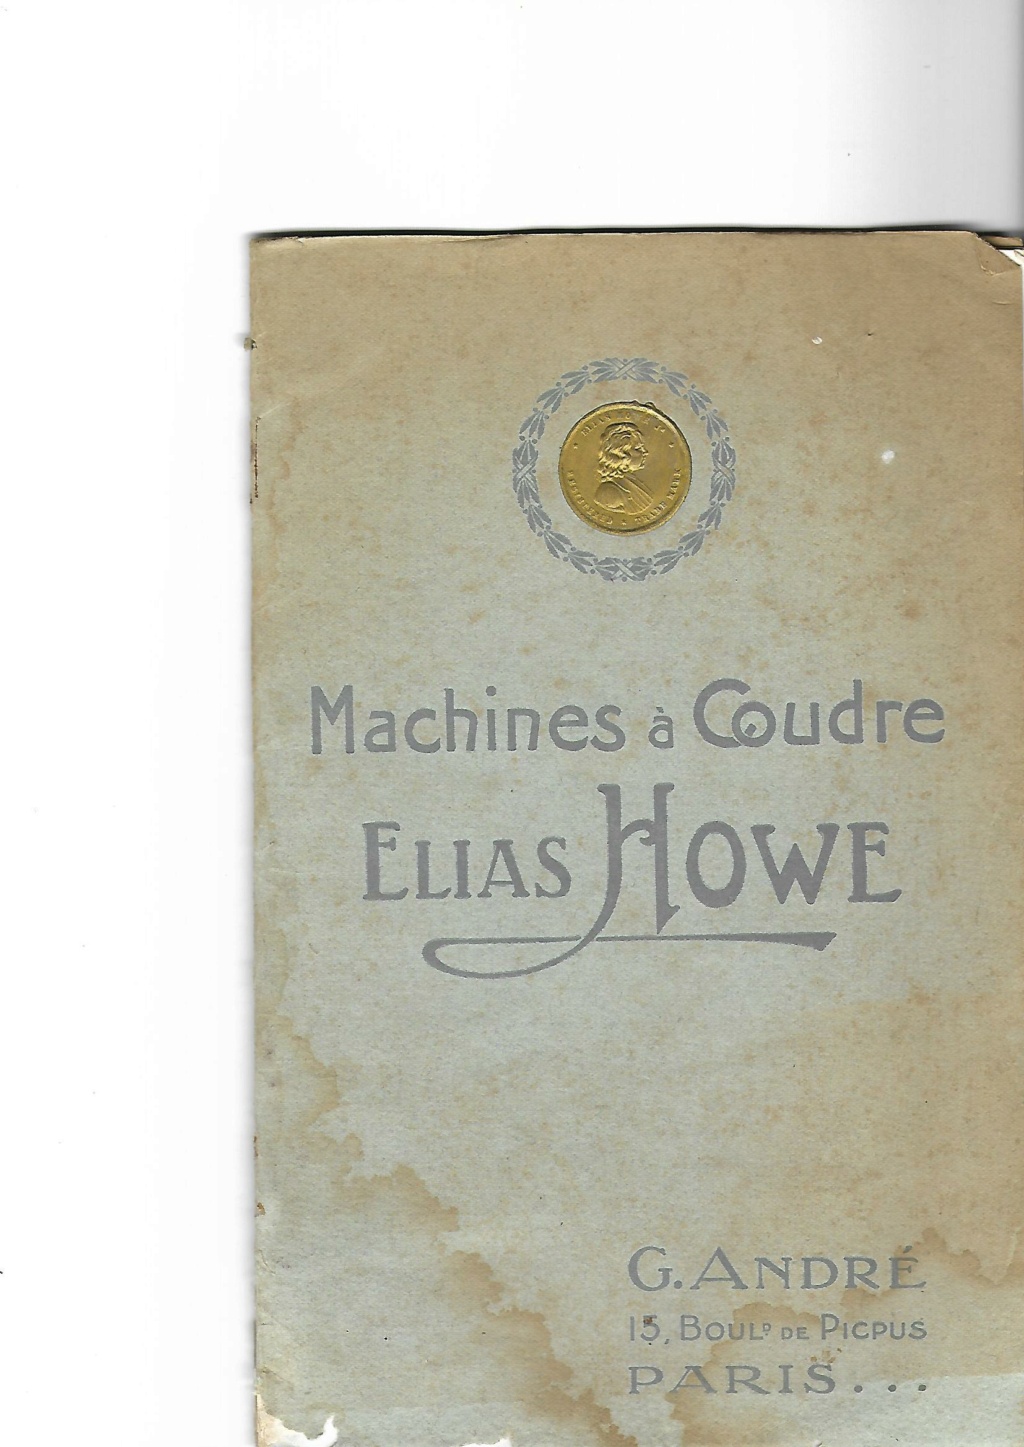 Catalogue Howe 1923 Jpeg_c12